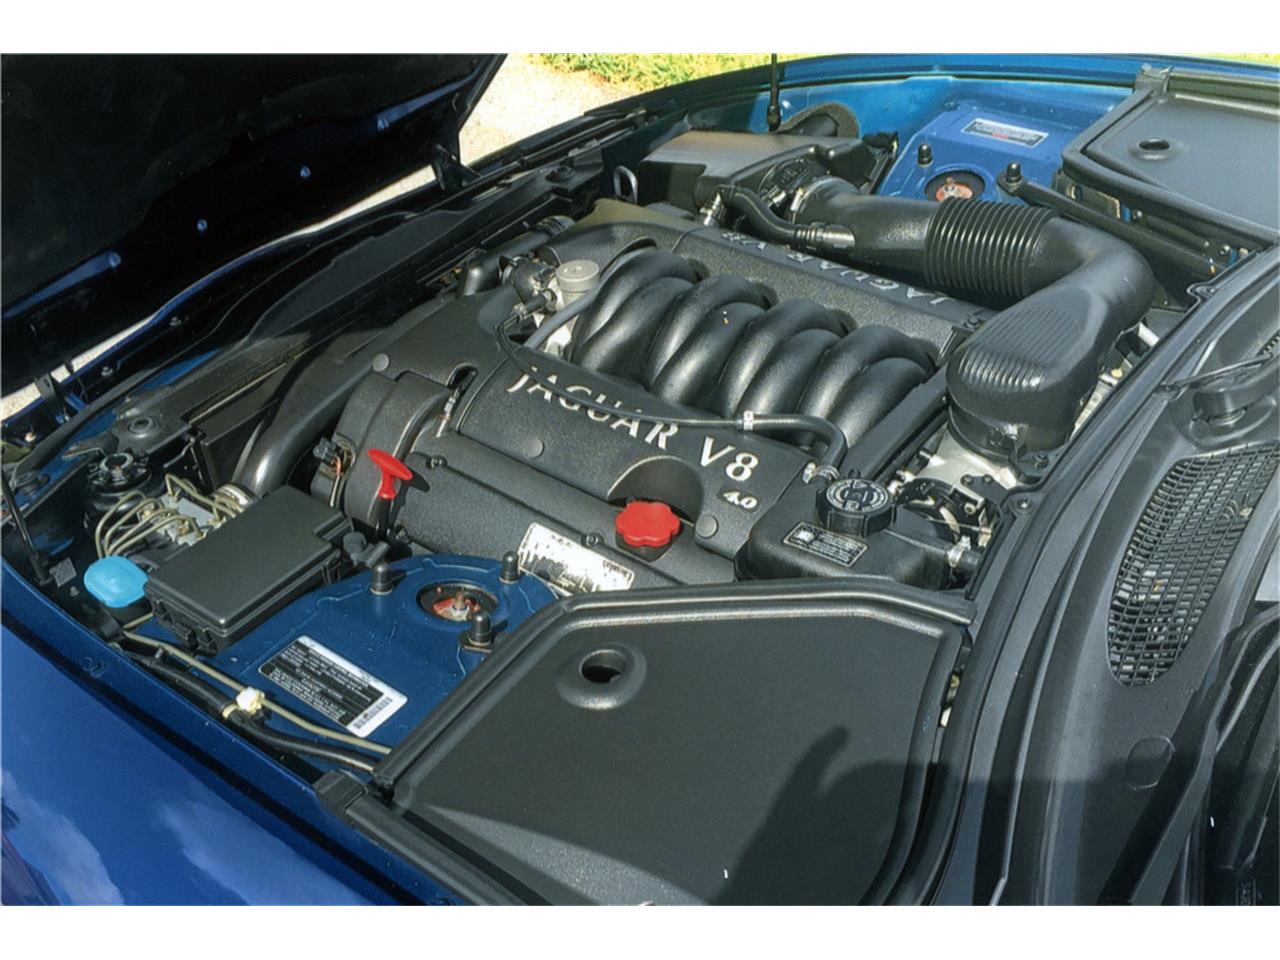 For Sale at Auction: 2001 Jaguar XK8 for sale in West Palm Beach, FL